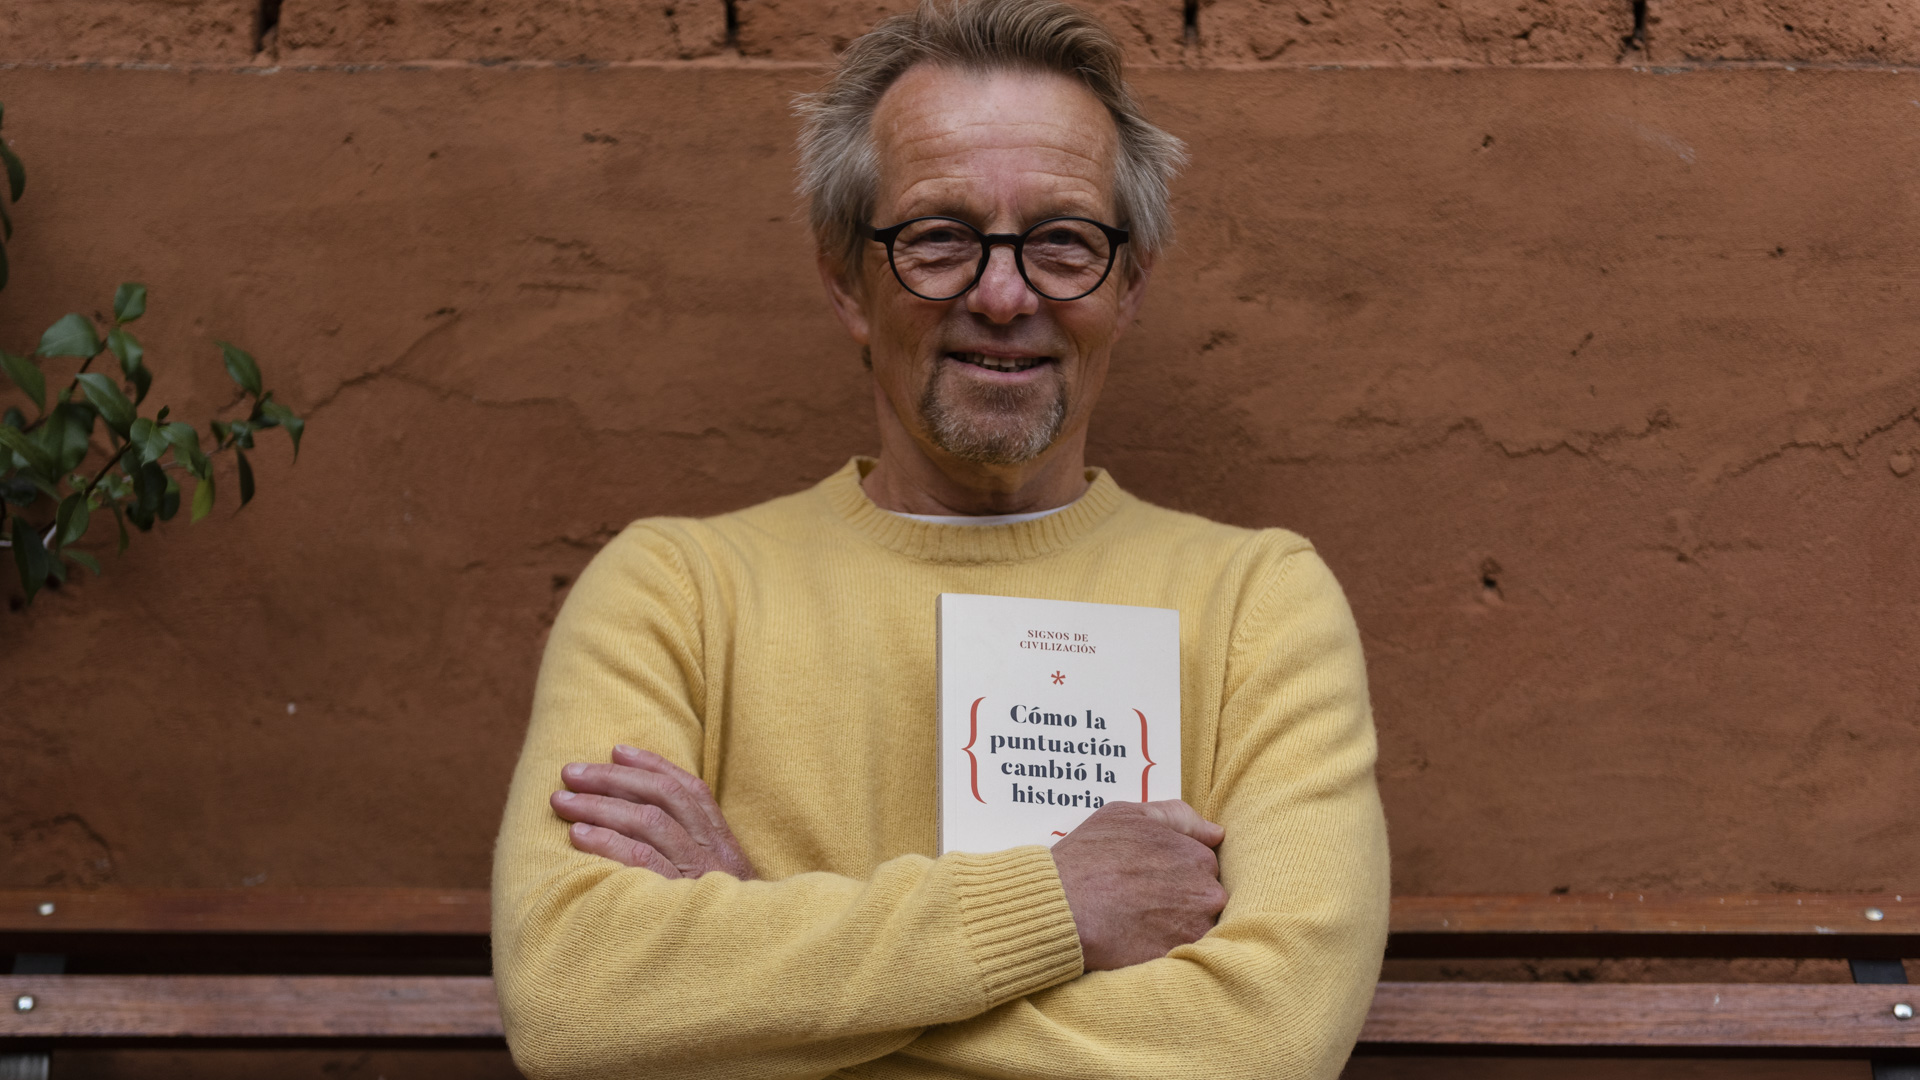 El académico noruego Bård Borch Michalsen con su libro traducido por primera vez al español, "Cómo la puntuación cambió la historia". (Foto: Adrián Escandar).